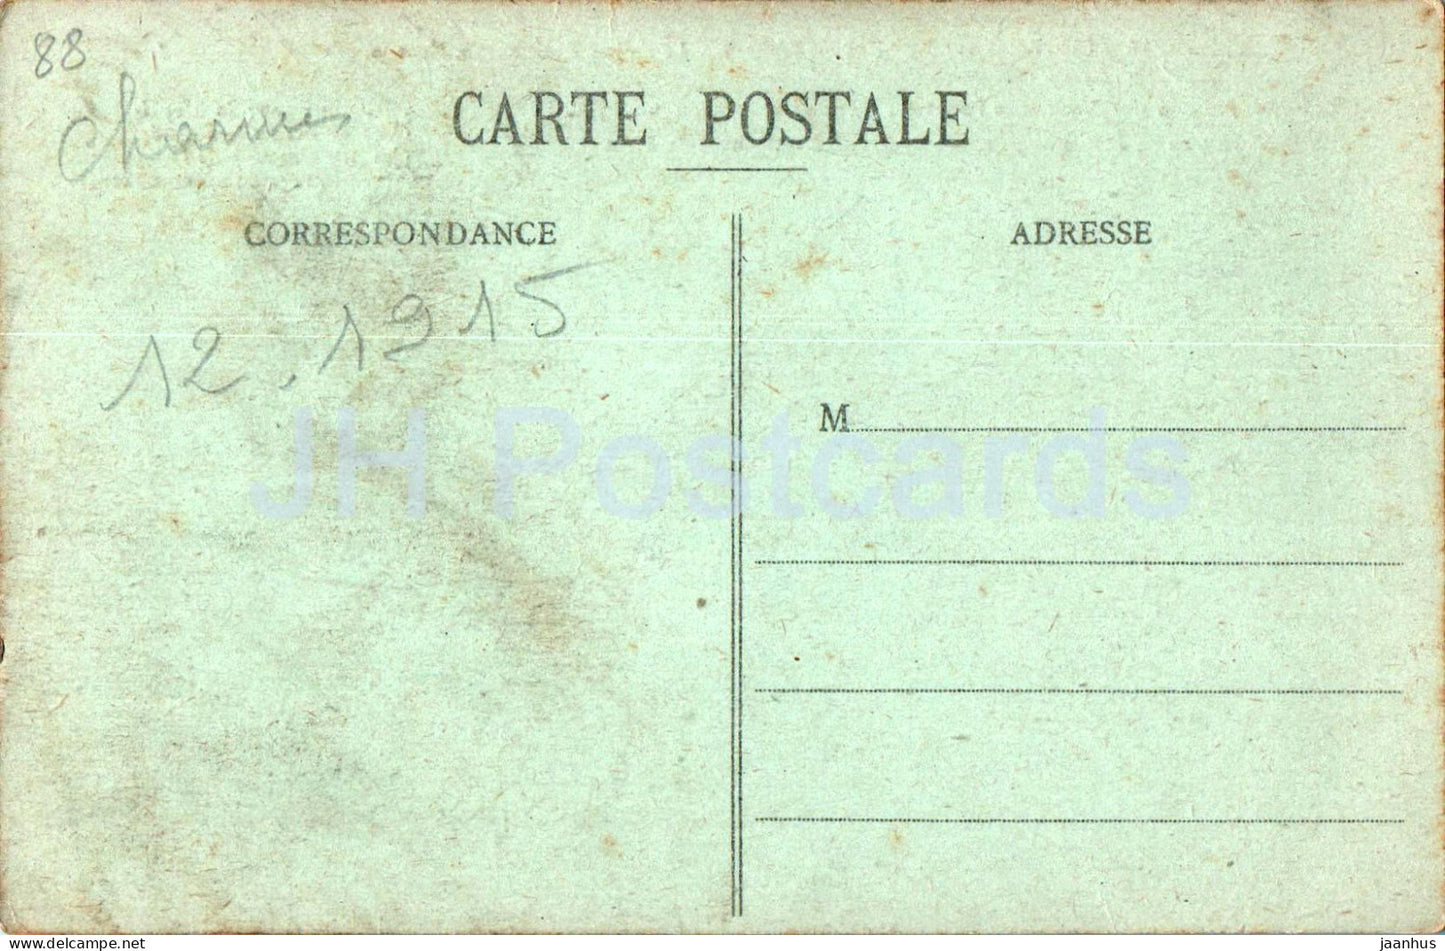 Charmes sur Moselle - Le Grand Pont sur la Moselle - pont - 16 - carte postale ancienne - 1915 - France - utilisé 